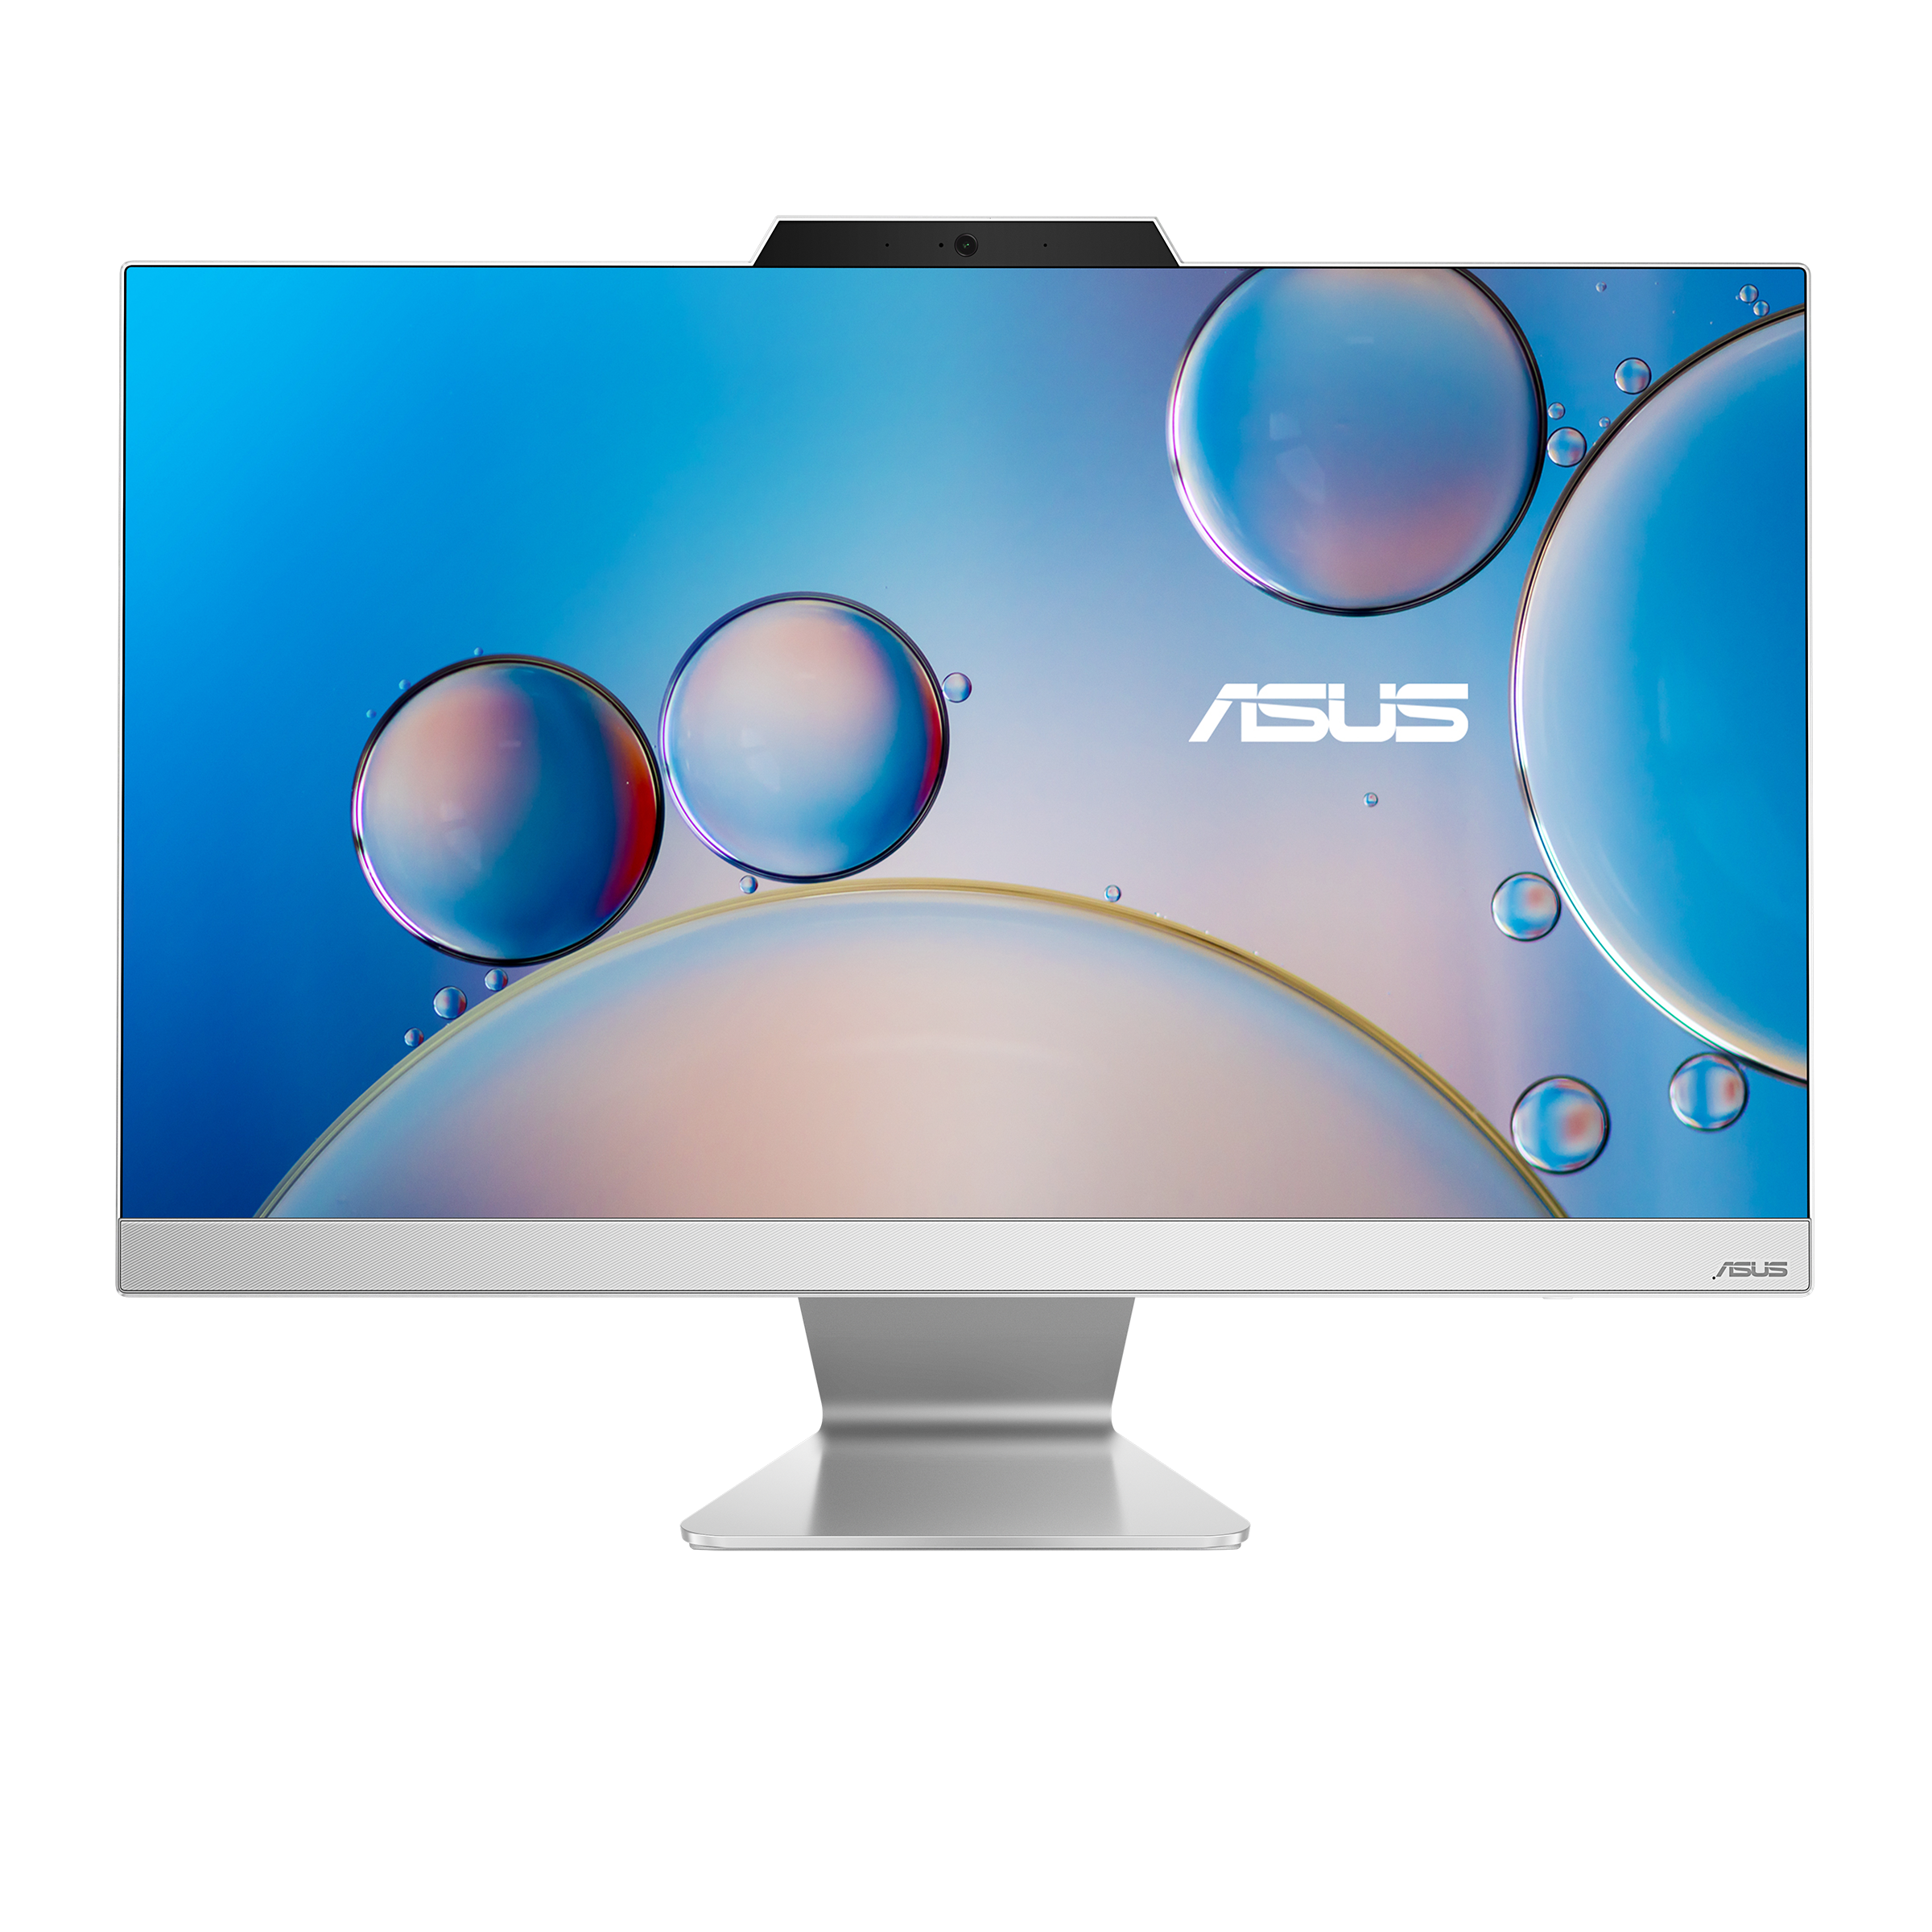 ASUS A3 Series_A3402_White_ 12th Gen Intel® Core™ i7 processor